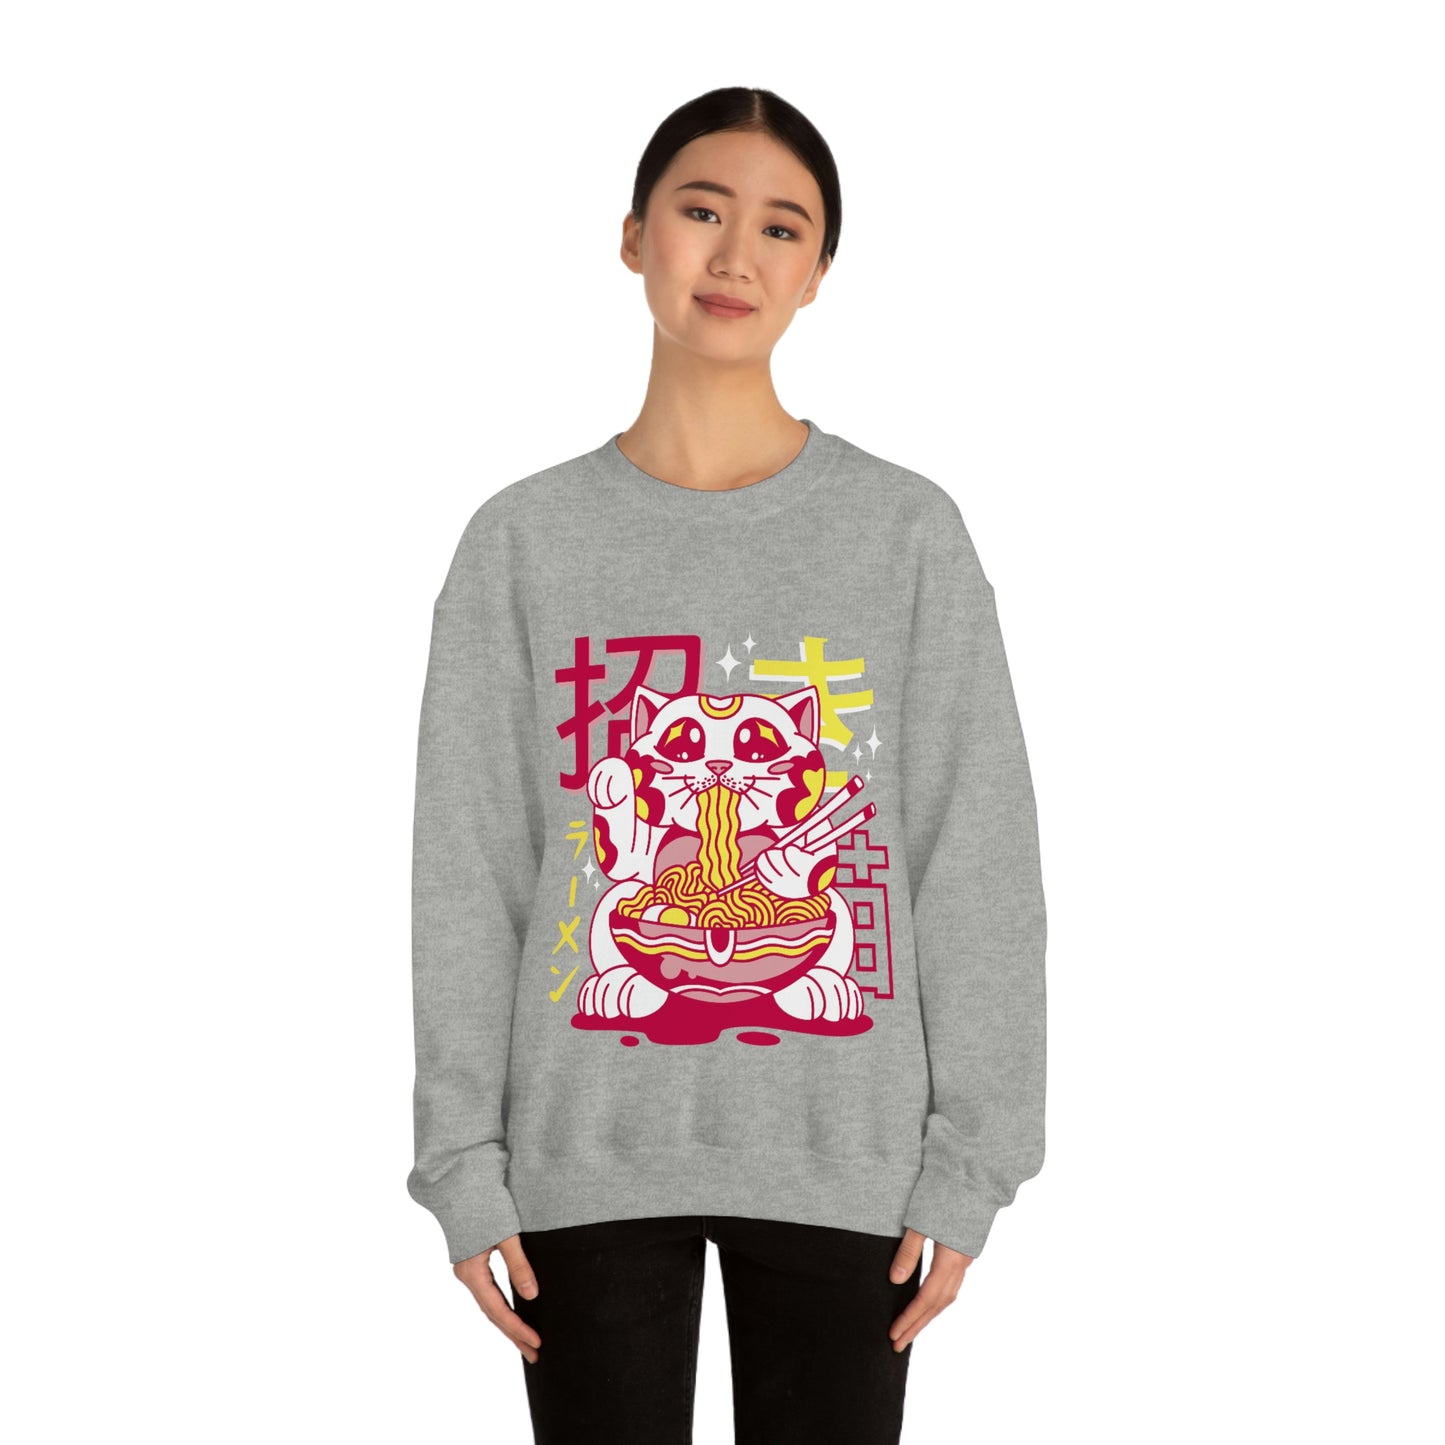 Kawaii Sweatshirt, Kawaii Clothing, Kawaii Clothes, Yami Kawaii Aesthetic, Pastel Kawaii Sweatshirt Ramen Sweater Sweatshirt